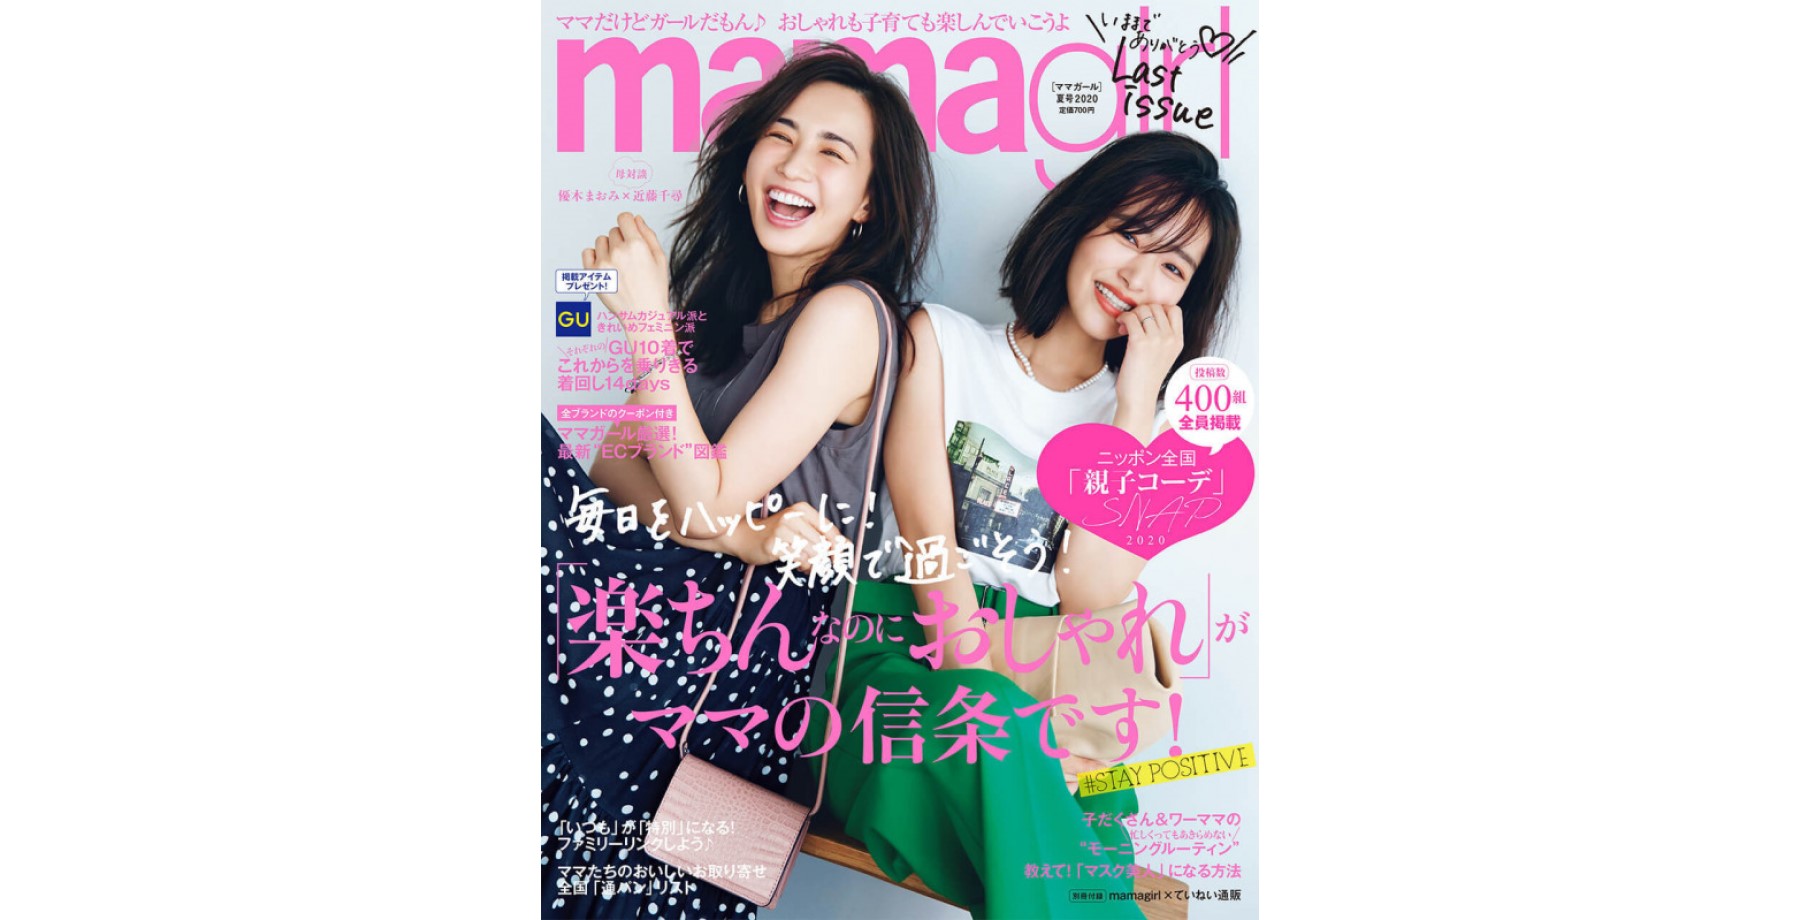 【メディア掲載情報】雑誌「mamagirl 2020年夏号」にdevirockの商品が掲載されました。